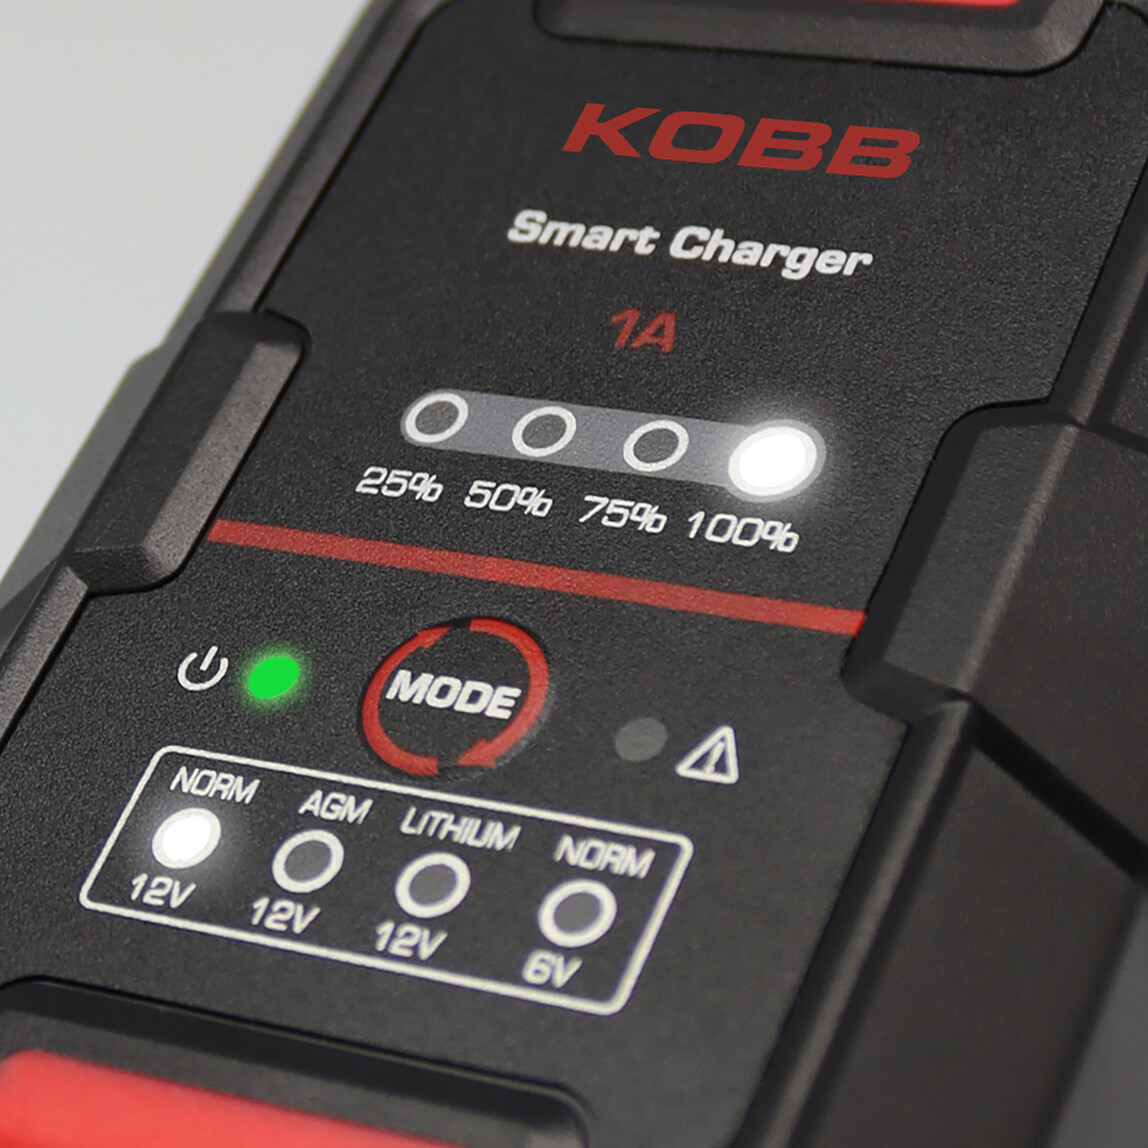    Kobb KBS1000 6V/12V 30Ah Akıllı Akü Şarj ve Akü Bakım Cihazı  